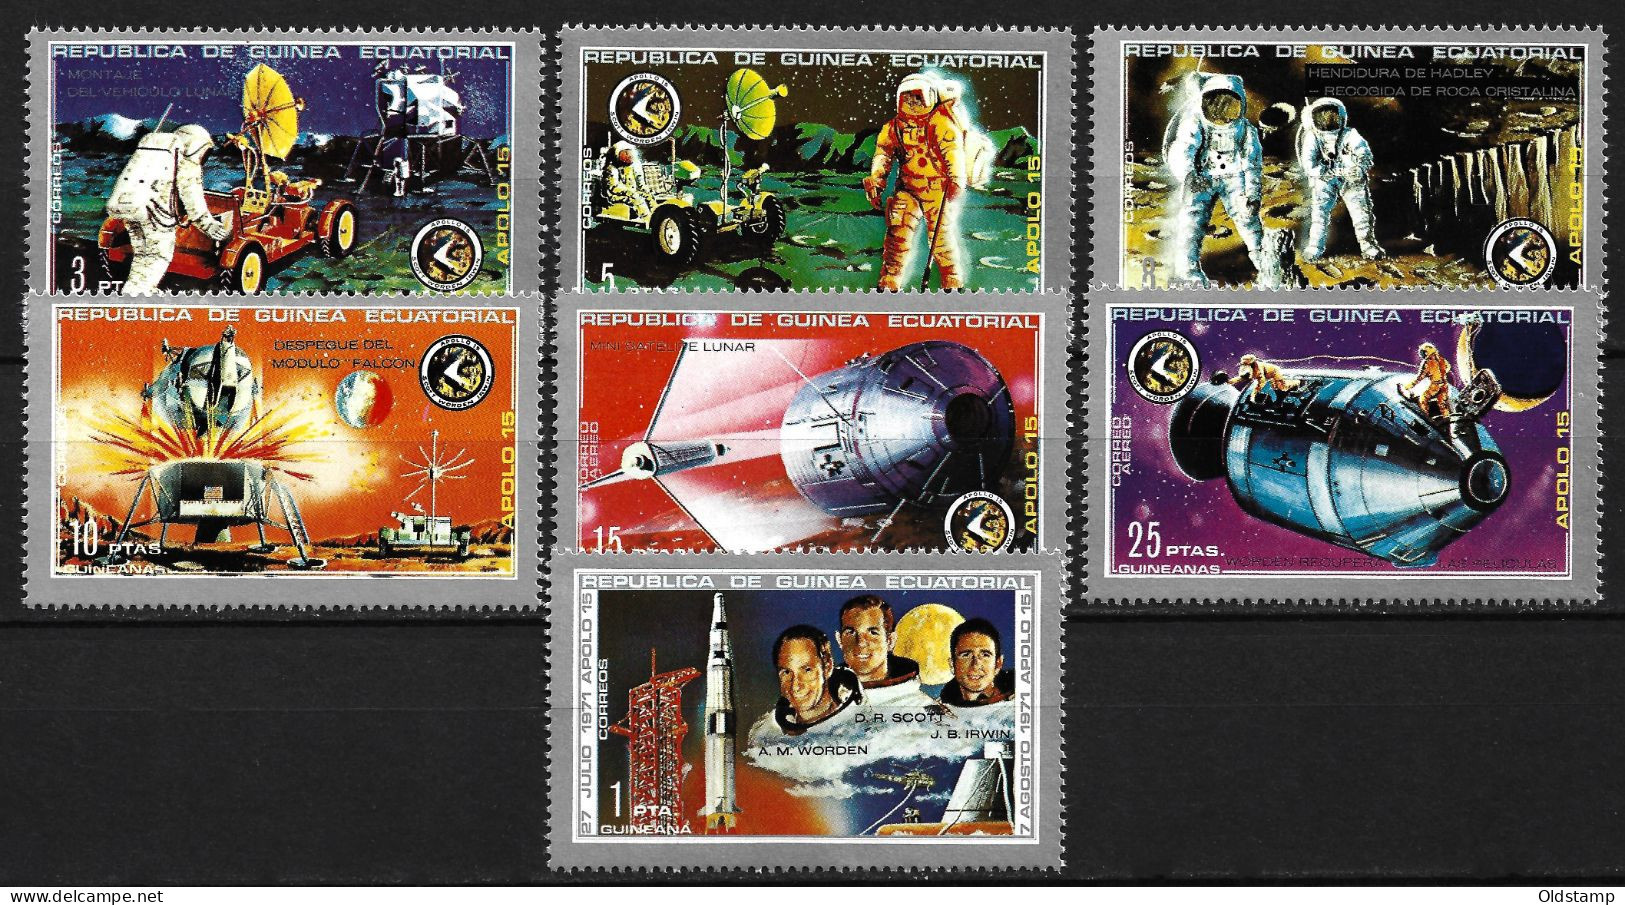 SPACE GUINEA 1972 MNH Full Set Mi. 18 - 24 APOLLO SHIP ASTRONAUTS Stamps Guinée équatoriale Guinea - Sammlungen